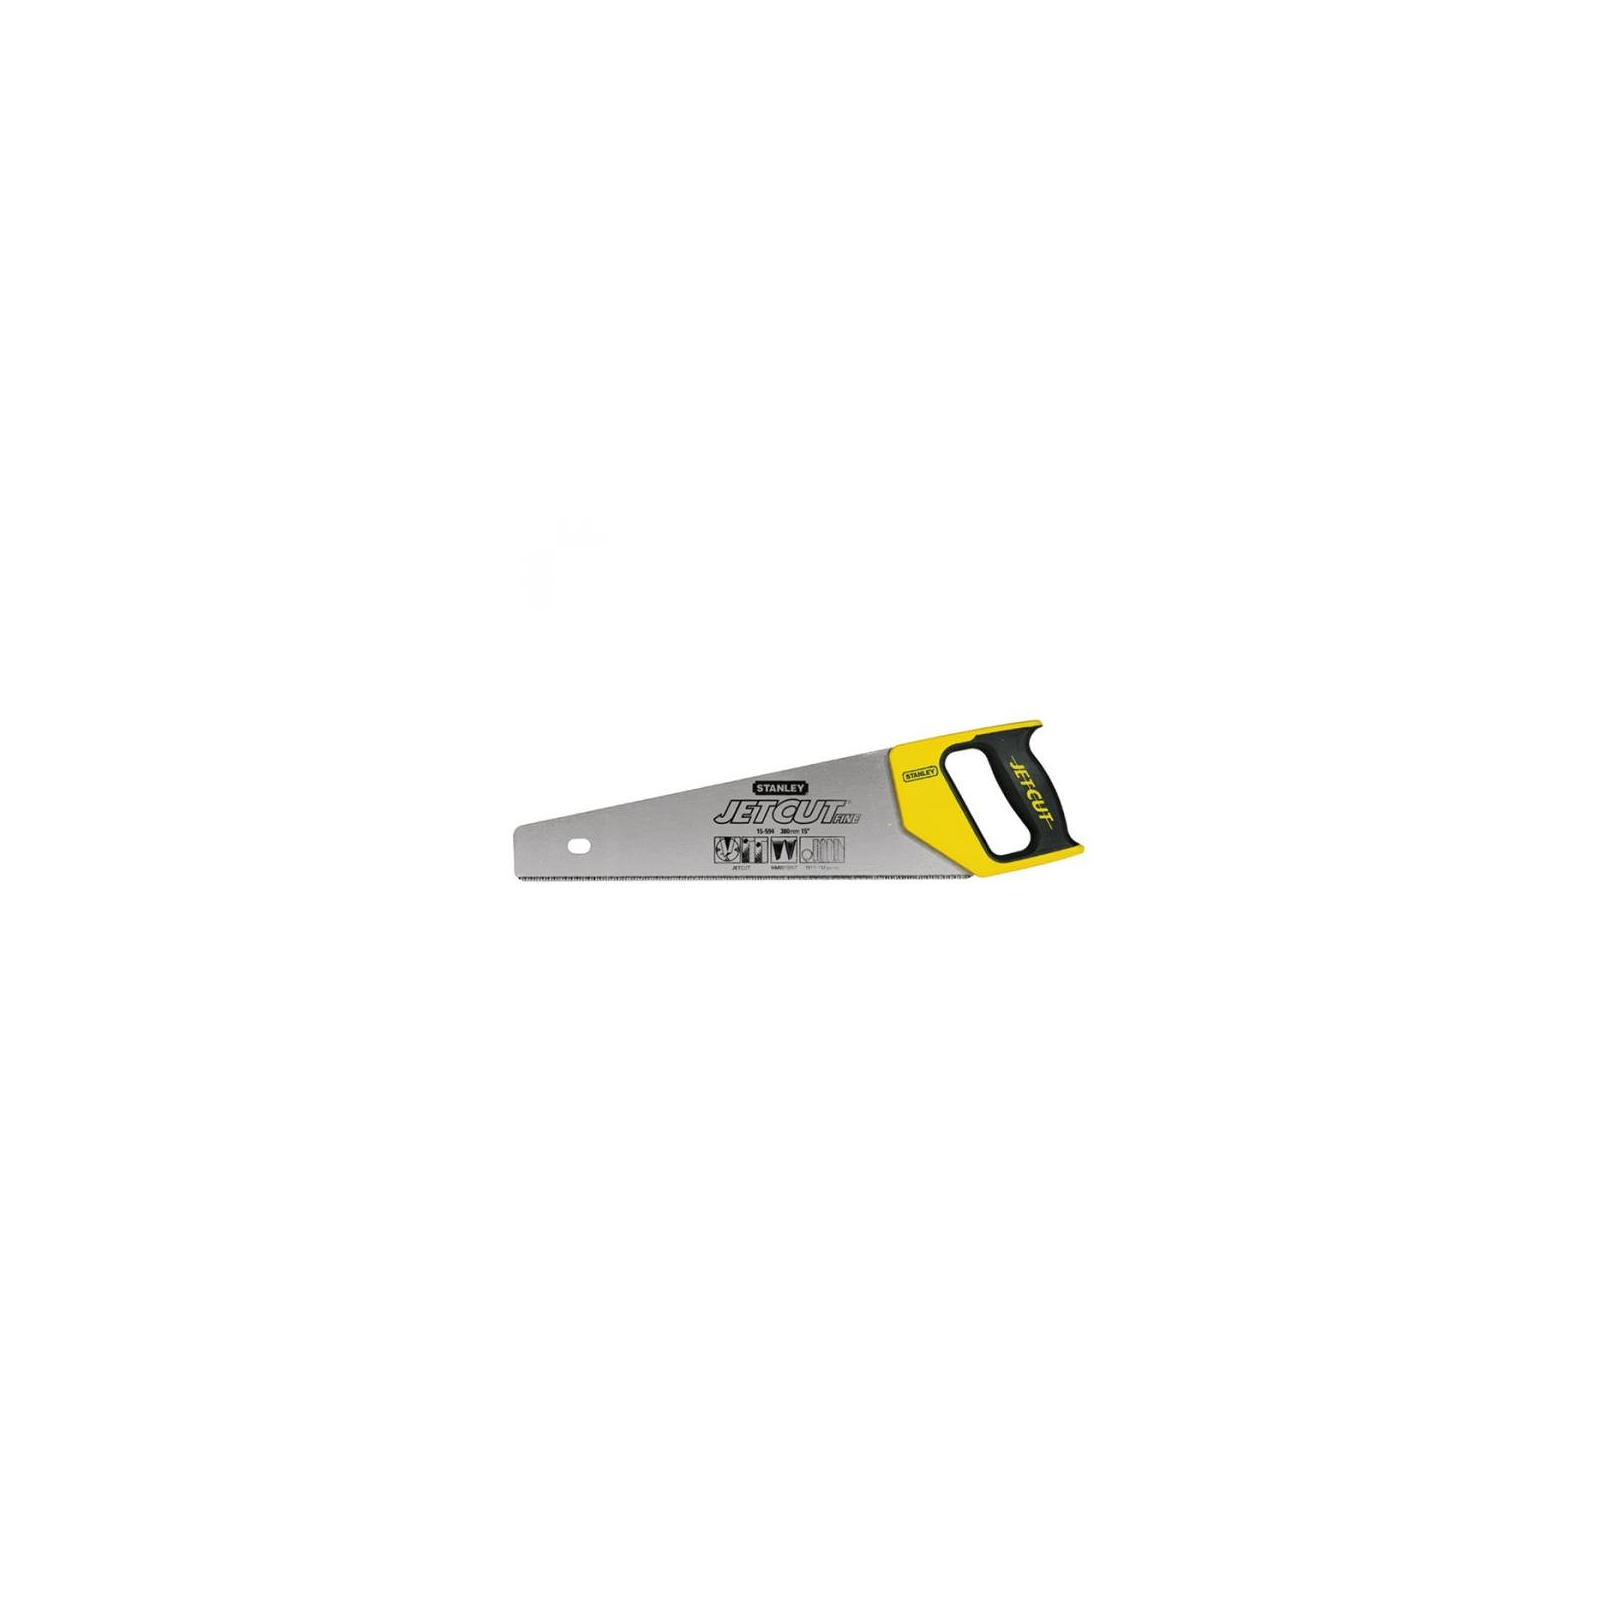 Ножівка Stanley Jet-Cut Fine 11 зубьев на дюйм, длина 380 мм (2-15-594)